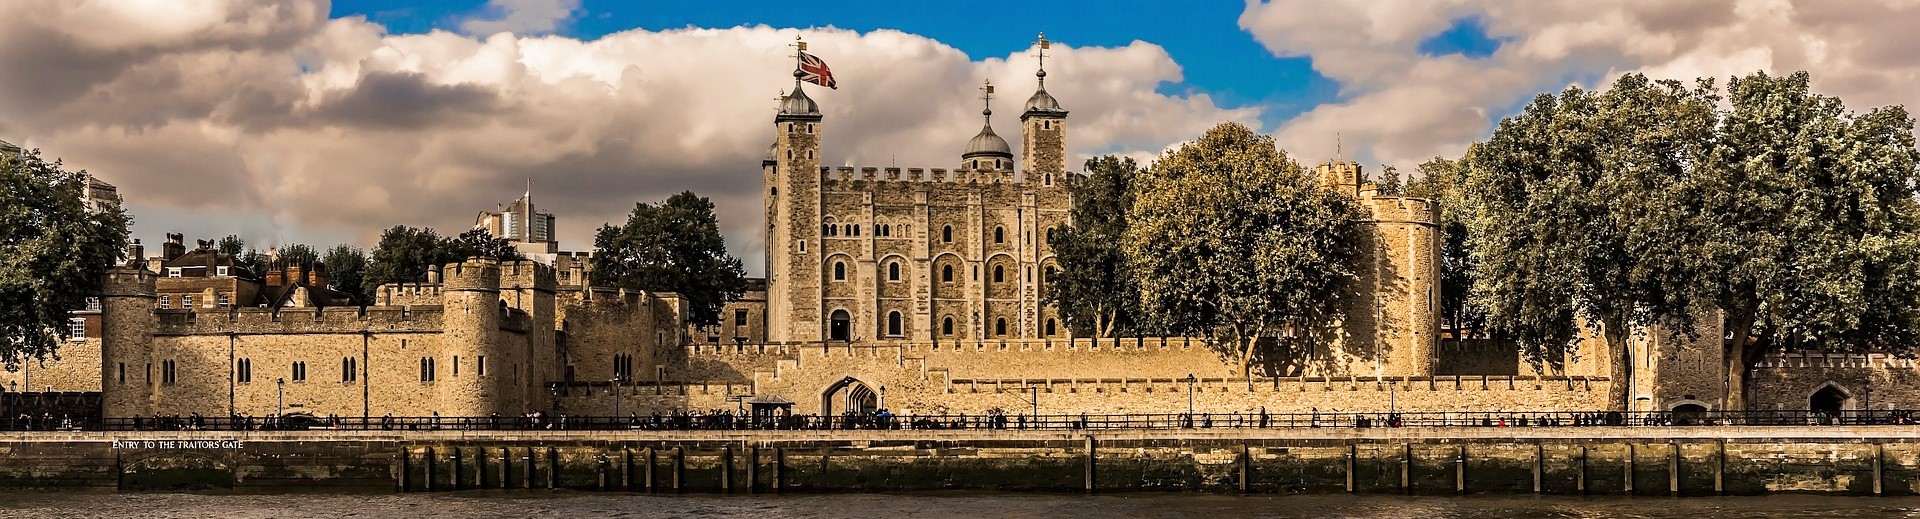 ロンドン塔 Tower of London（イギリス・ロンドン） | ティースタイル